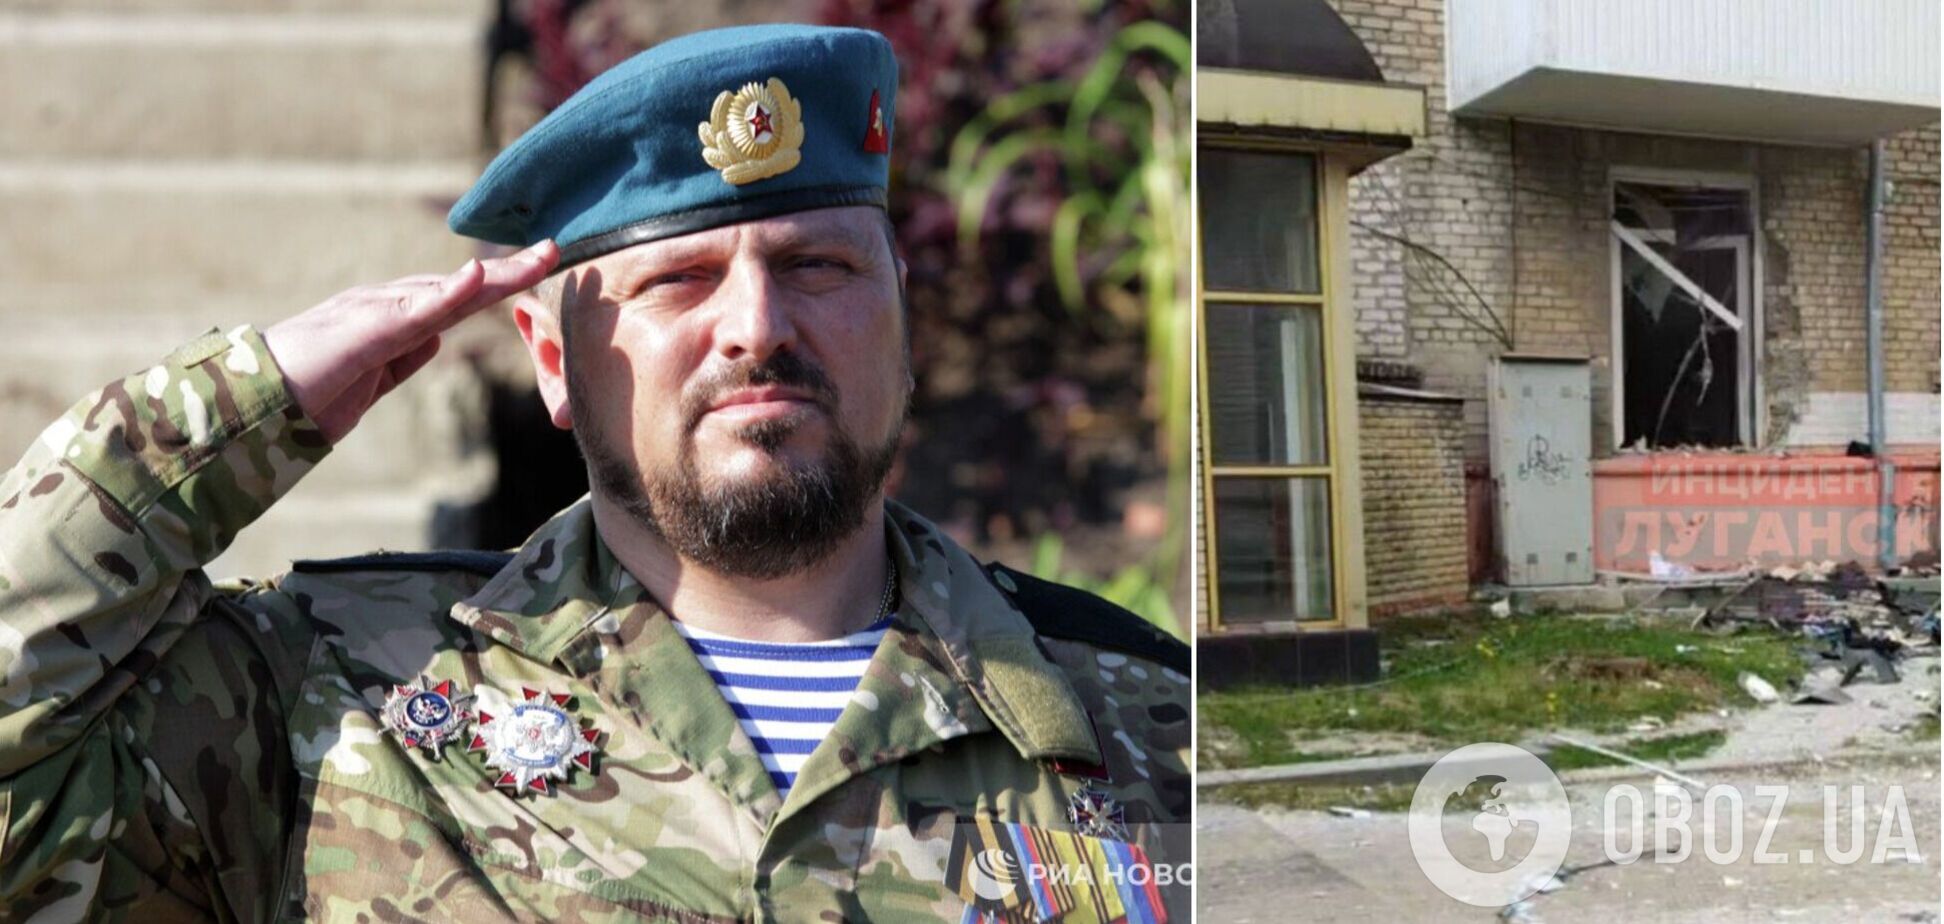 В результате взрыва в Луганске ранен 'глава МВД ЛНР' Корнет: стали известны подробности